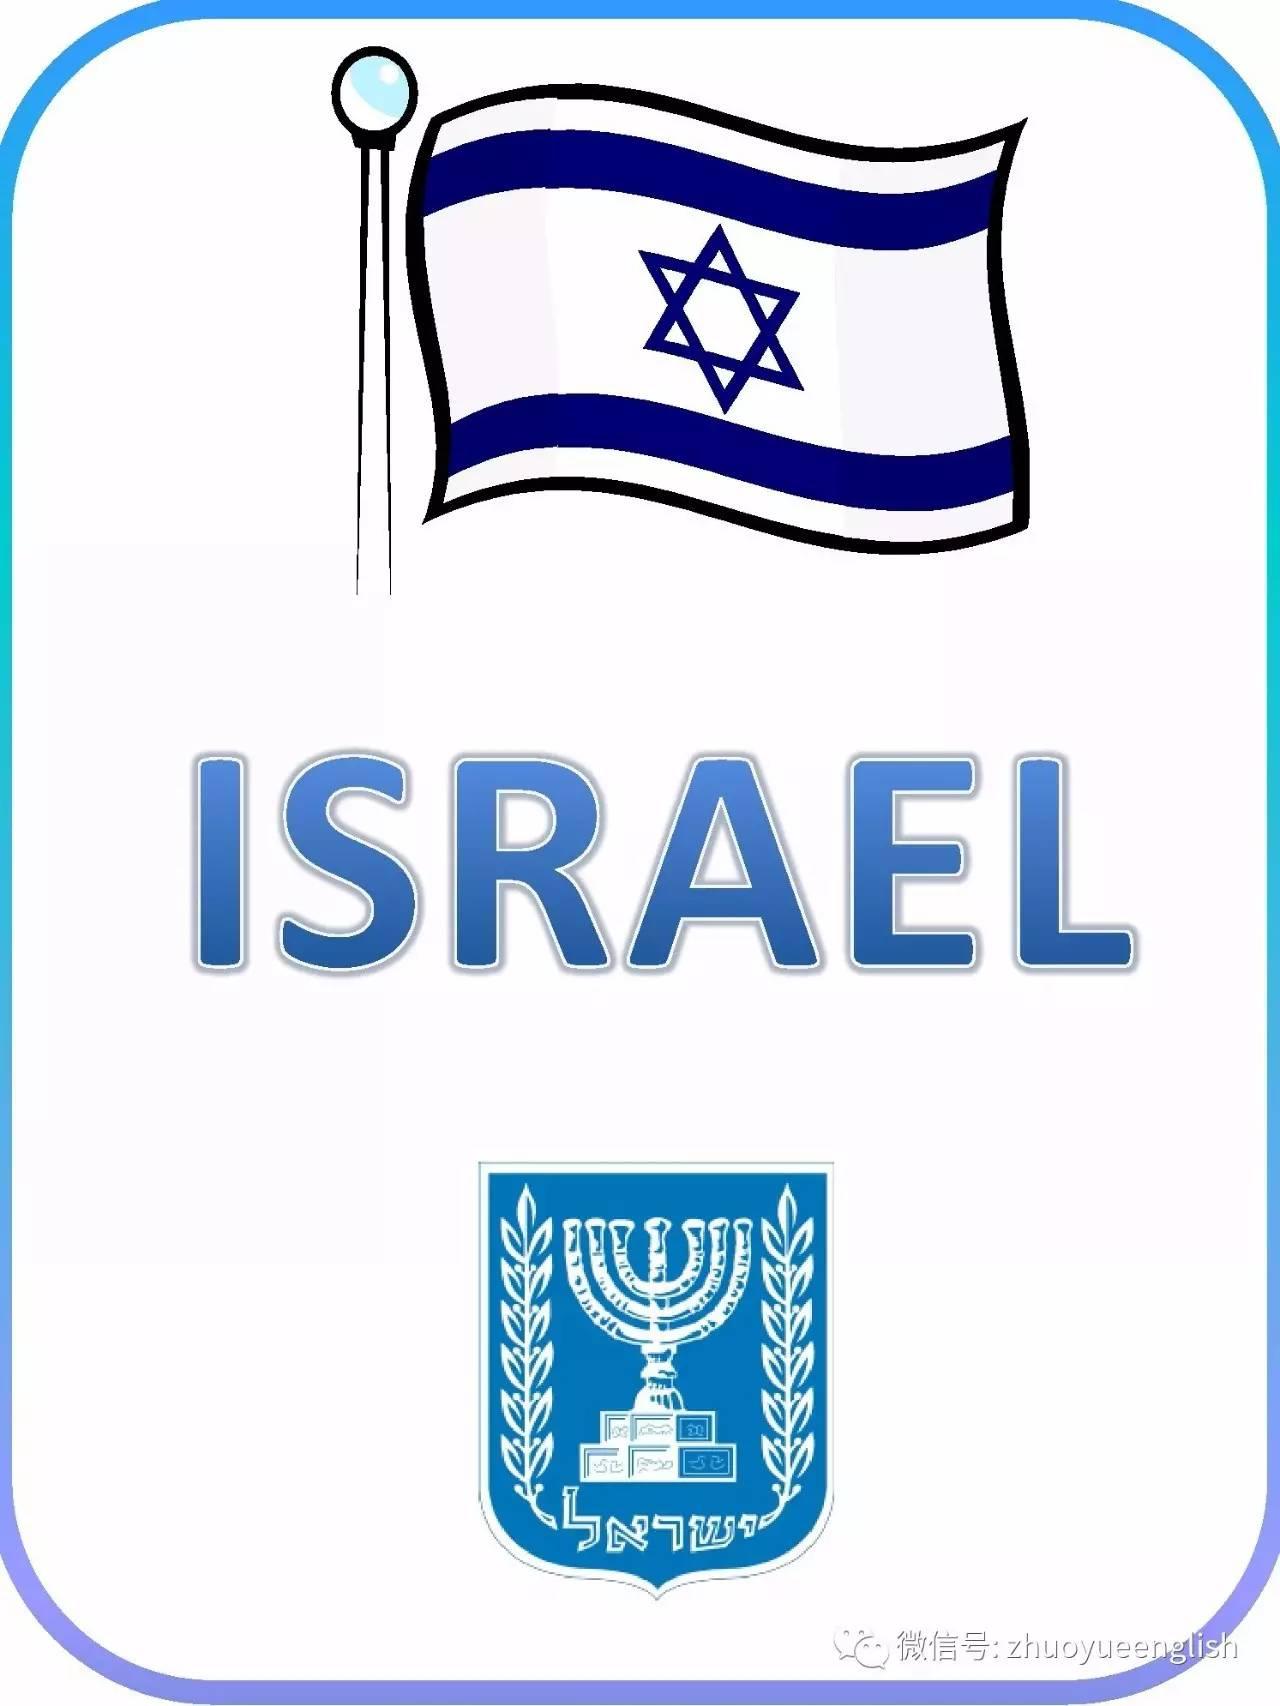 国旗白底兰色条纹,中间有一颗蓝色六角星,称之为"大卫之星",代表犹太